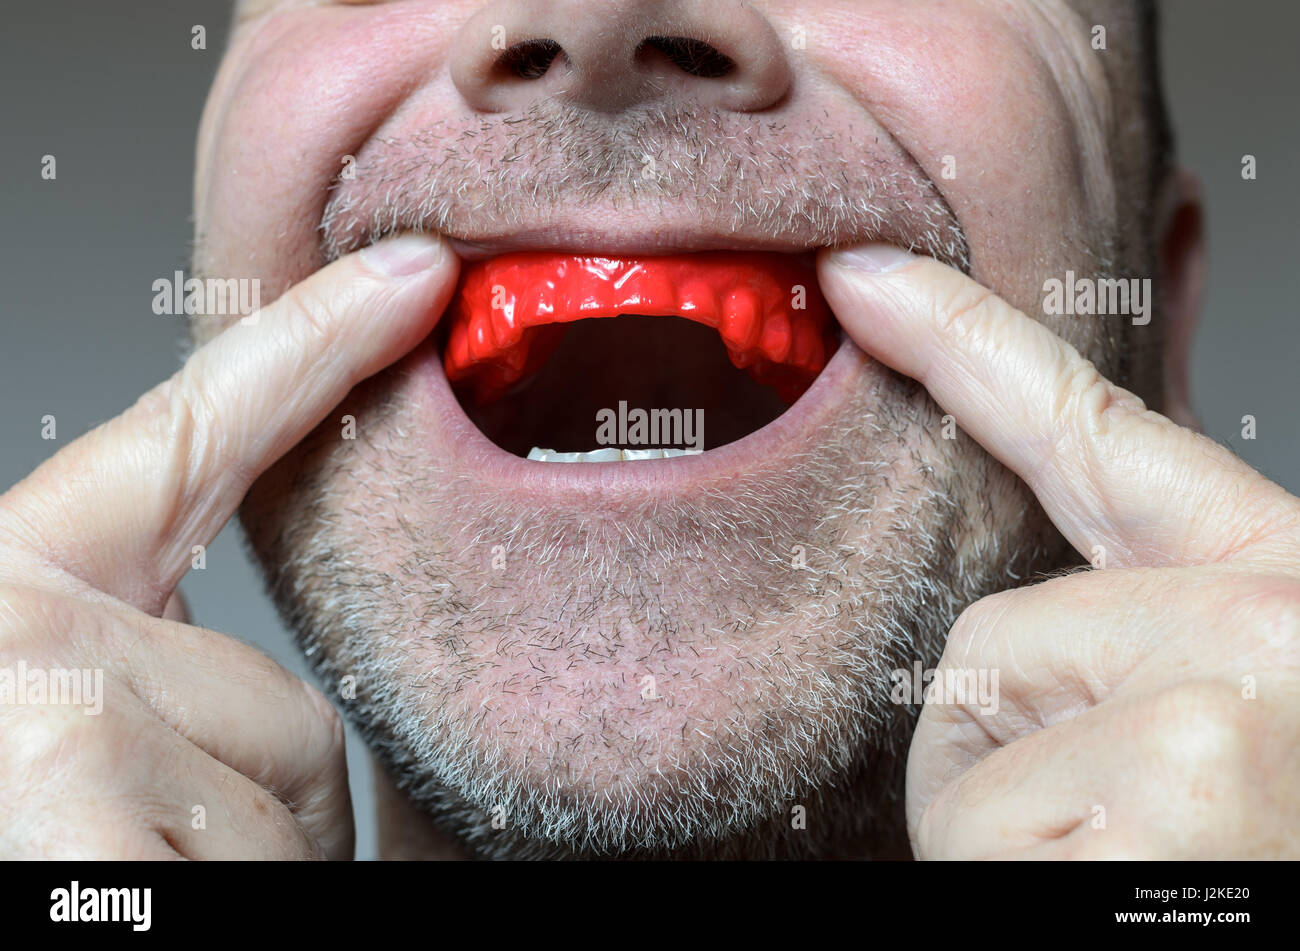 L'uomo collocando un morso rossa piastra nella sua bocca per proteggere i suoi denti di notte dalla macinazione causato da Bruxismo, Vista ravvicinata della mano e l'apparecchio Foto Stock